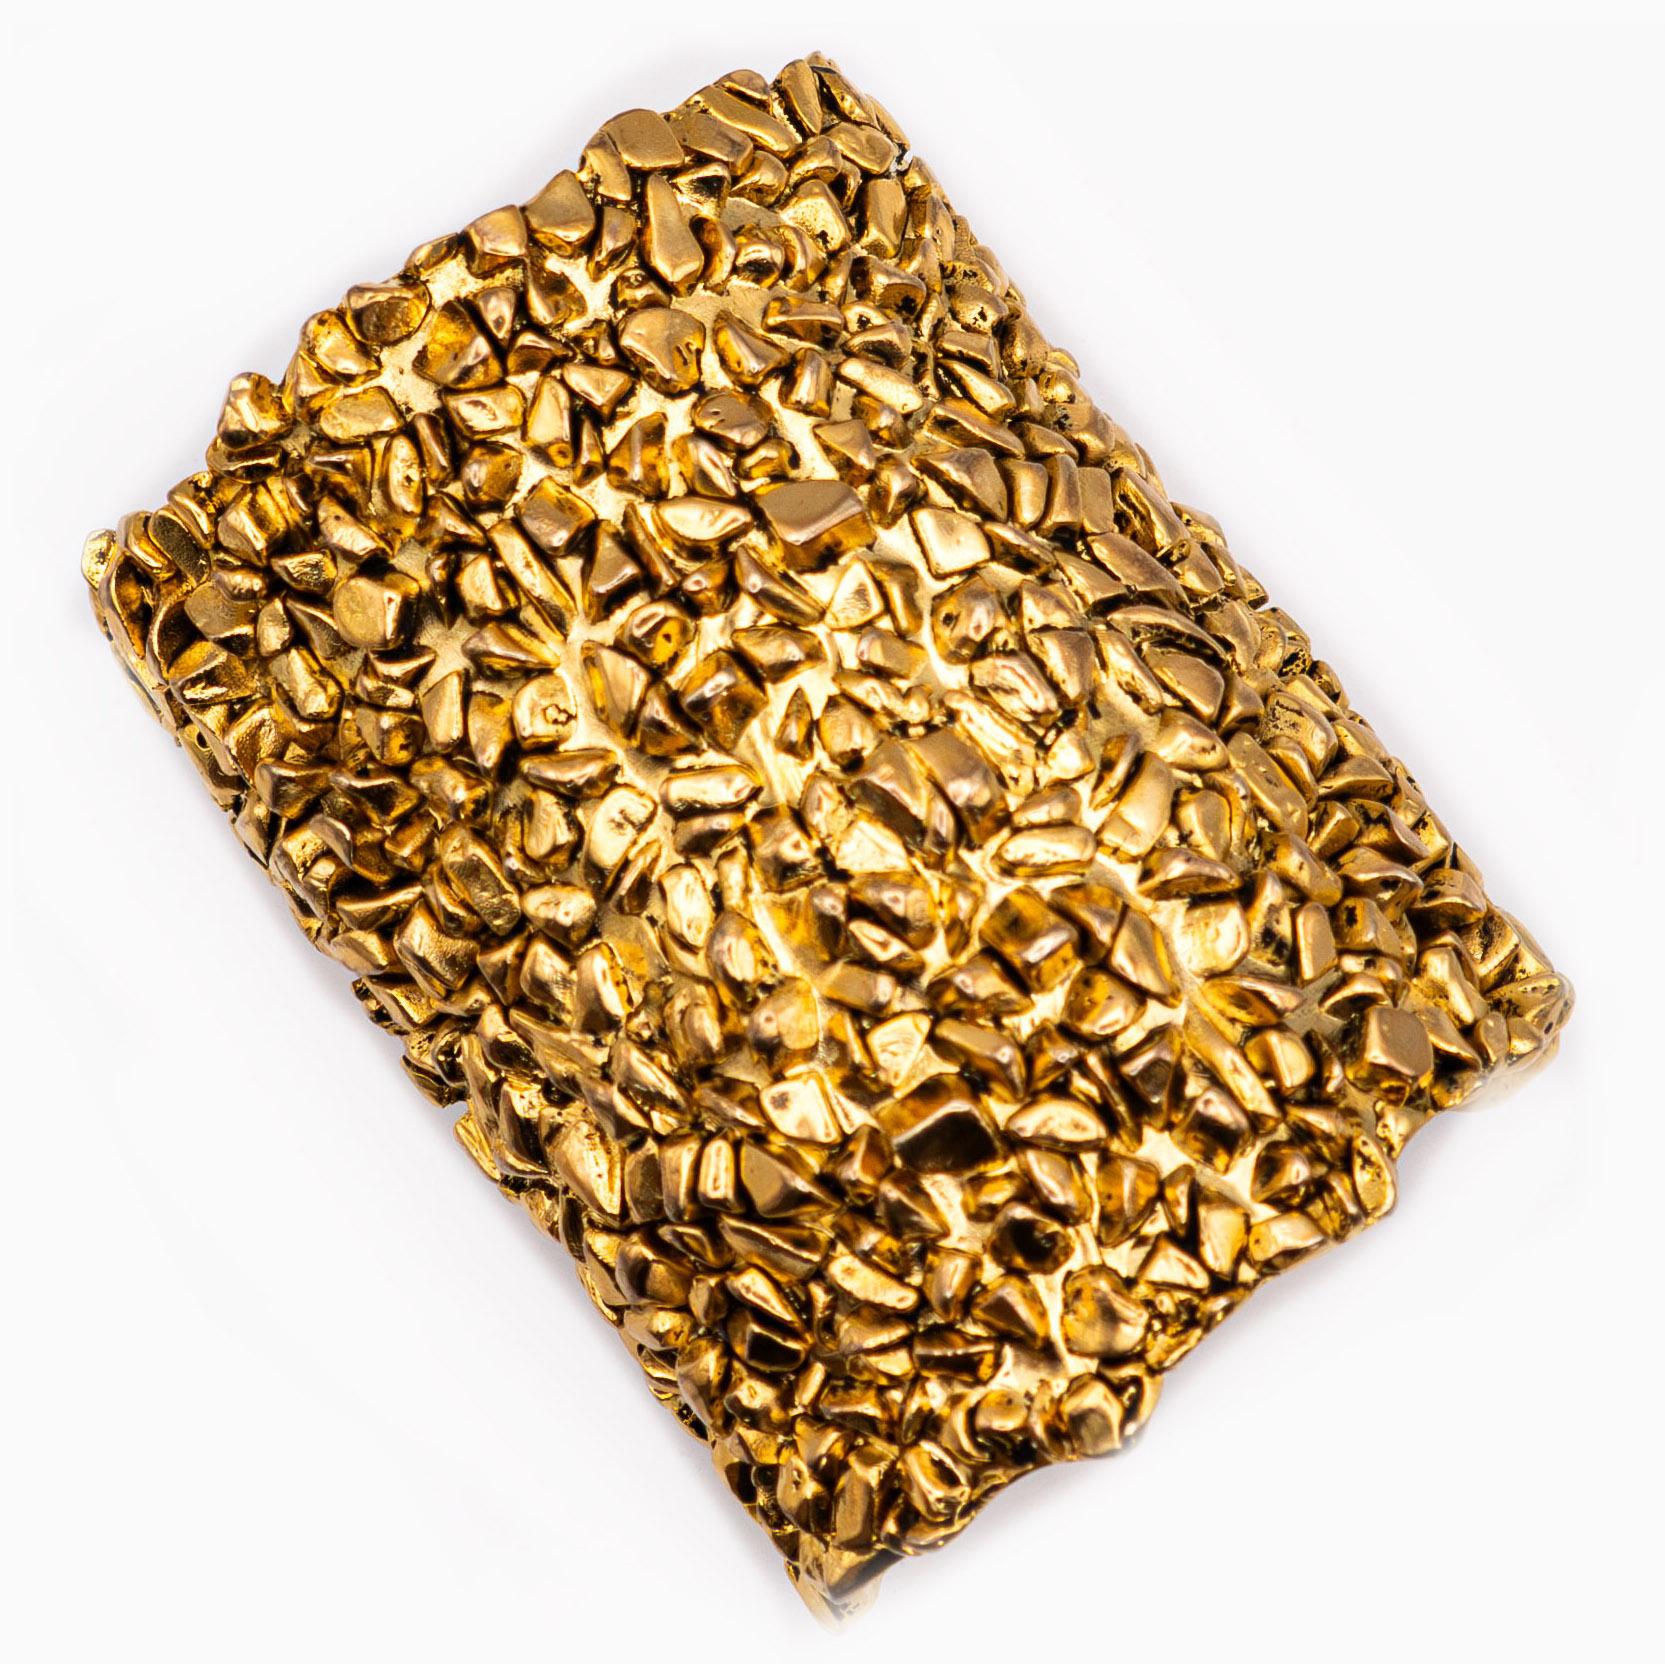 Skulpturales Manschettenarmband aus vergoldetem Metall im Stil von Goldnuggets - Signiert Yves Saint Laurent

Länge 9 cm und Durchmesser 7 cm